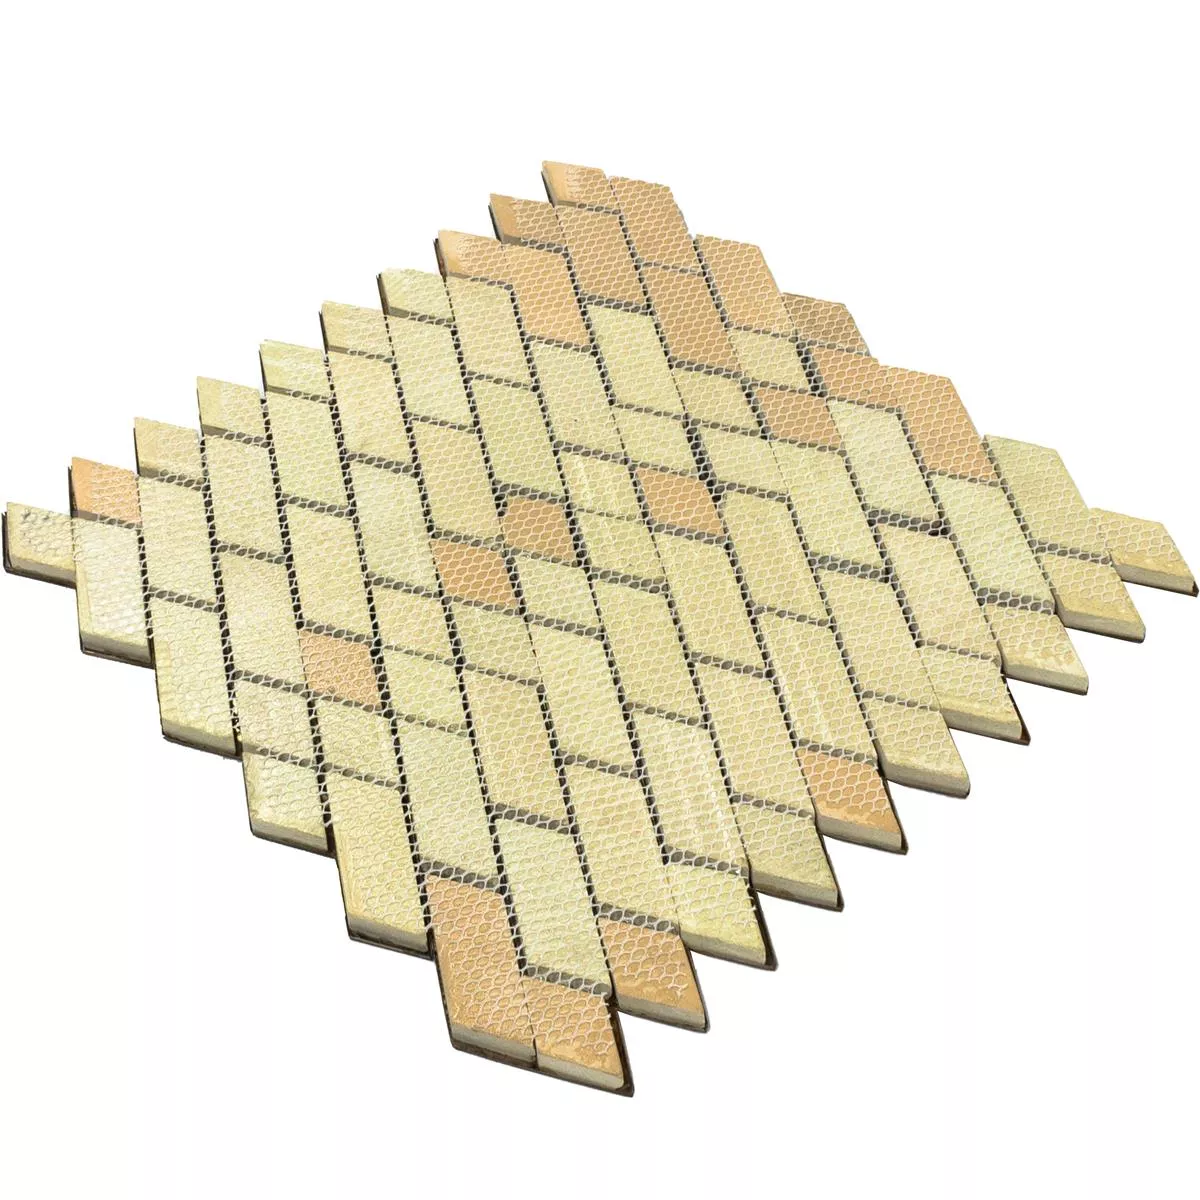 Metall Kupfer Mosaikfliesen Copperfield 3D Welle